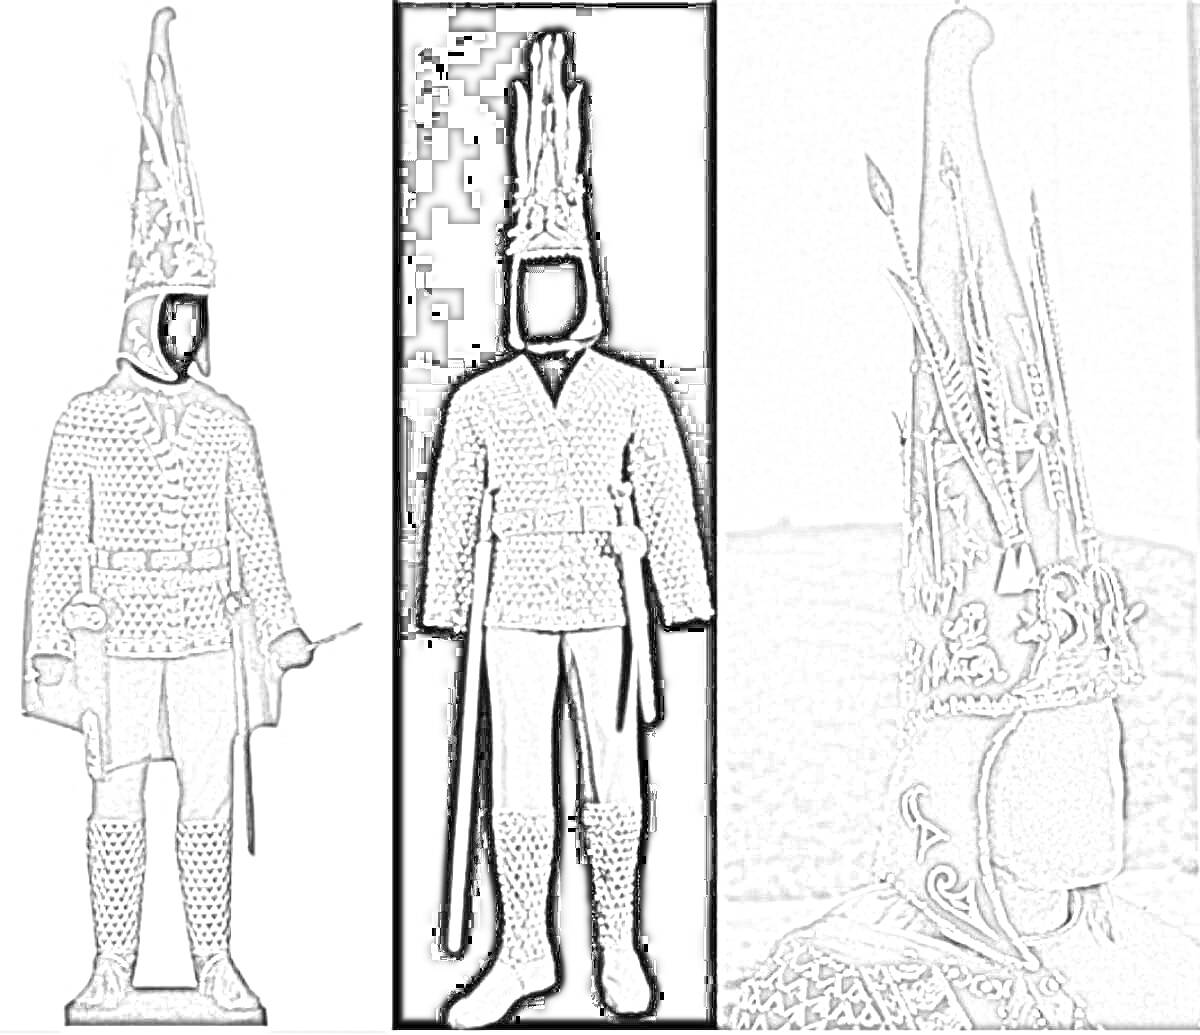 Раскраска золотой человек казахстана — изображение трех различных видов костюма воина-сакского царя. Центральный костюм включает в себя остроконечный шлем, многочисленные золотые украшения на одежде, меч и нож на поясе. Крайнее левое и правое изображения также вклю